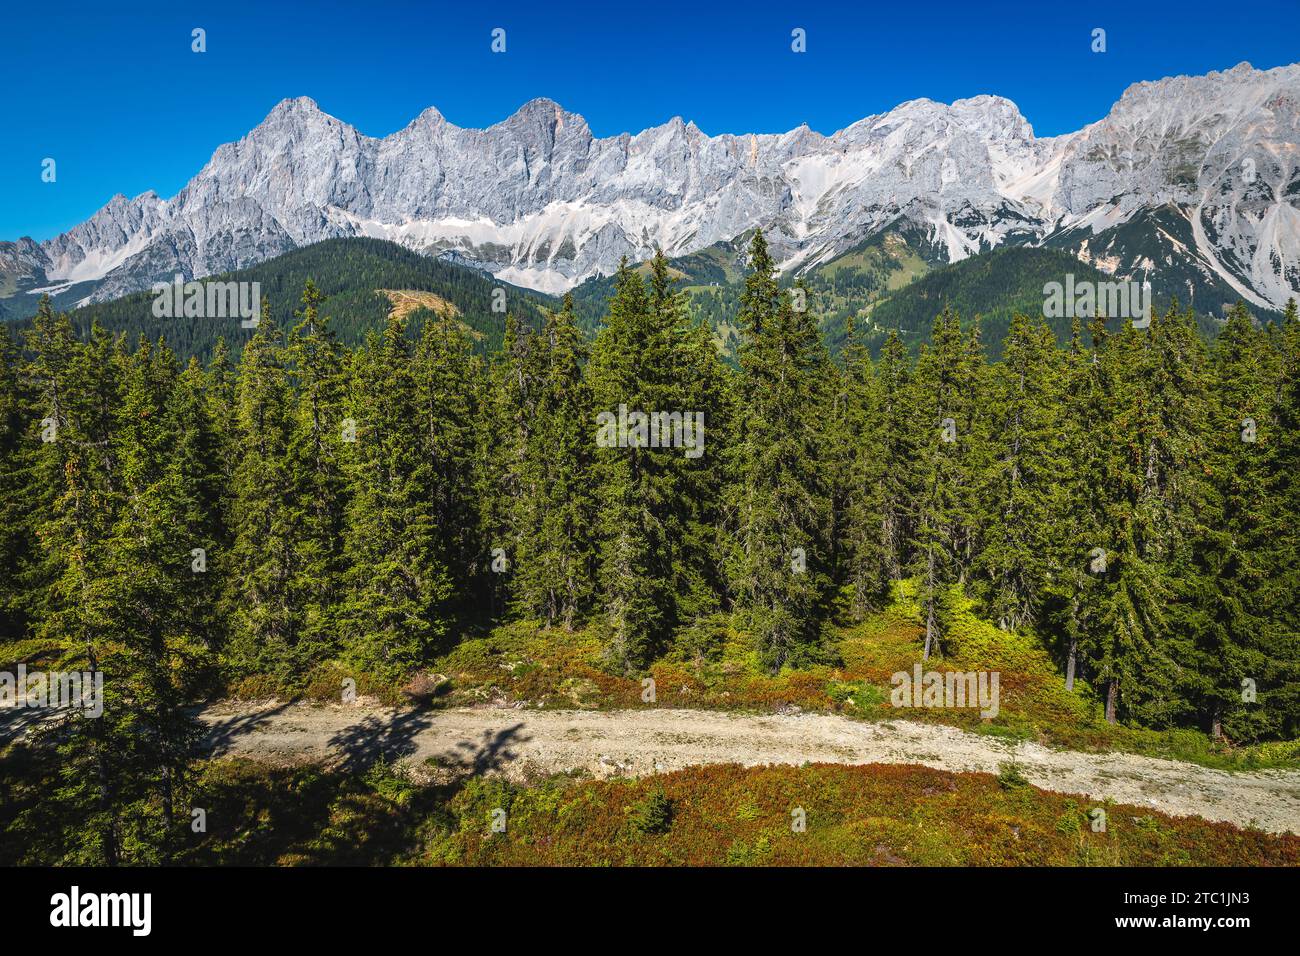 Wunderschöner Blick aus der Luft mit Kiefernwald und hohem Dachsteinkamm, Ramsau am Dachstein, Steiermark, Österreich, Europa Stockfoto